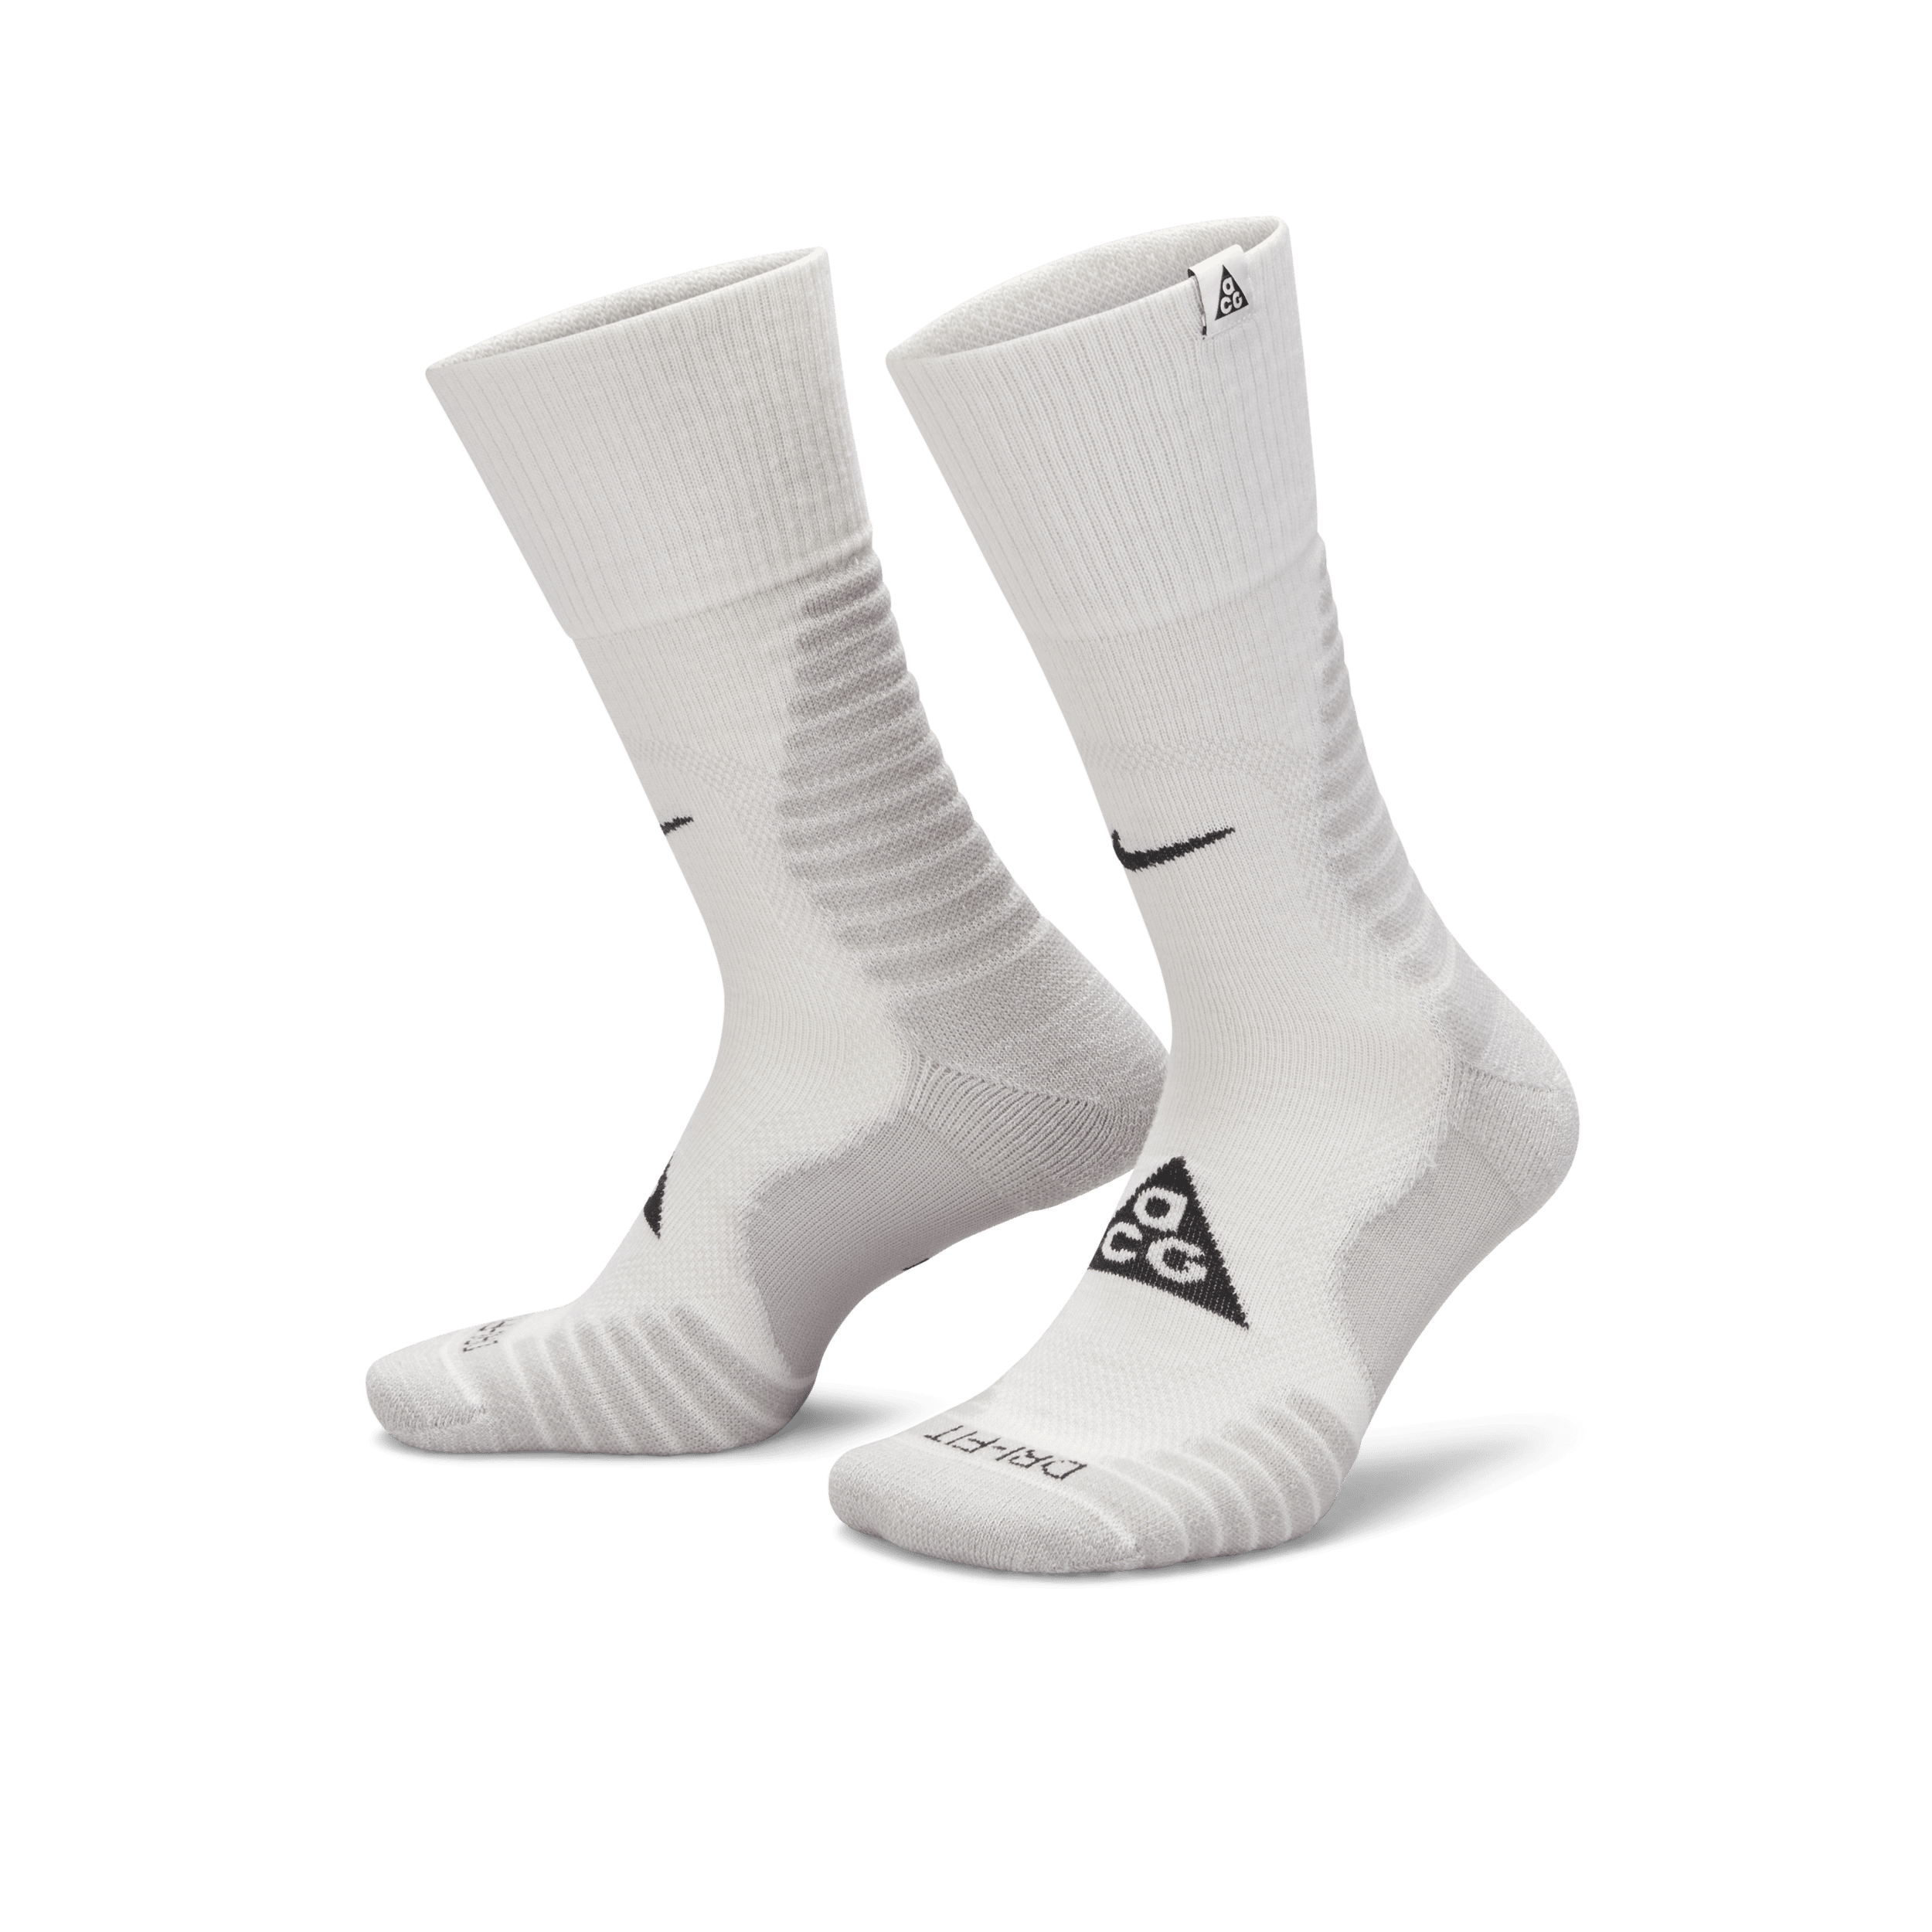 Calze ammortizzate per l'outdoor Nike ACG di media lunghezza - Bianco